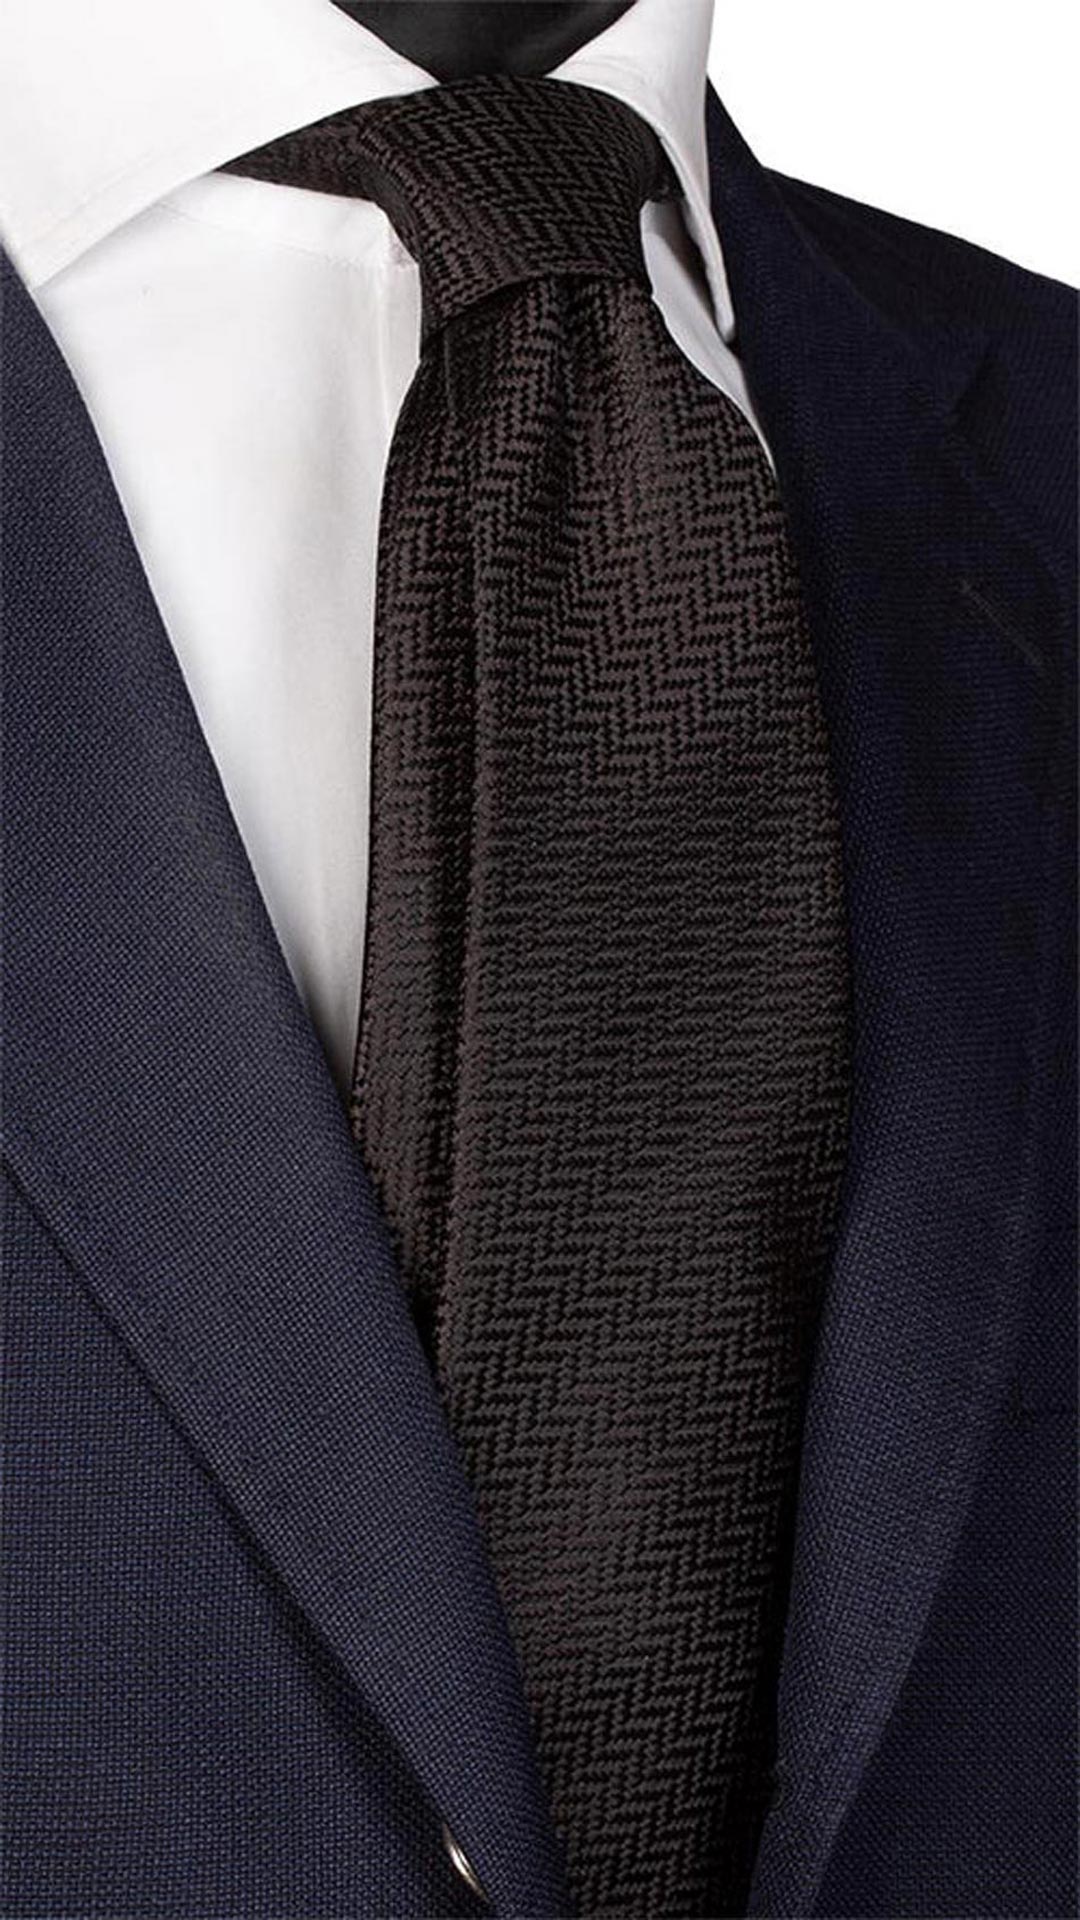 Cravatta da Cerimonia di Seta Nera Fantasia Lisca di Pesce Tono su Tono CY5908 Made in Italy Graffeo Cravatte